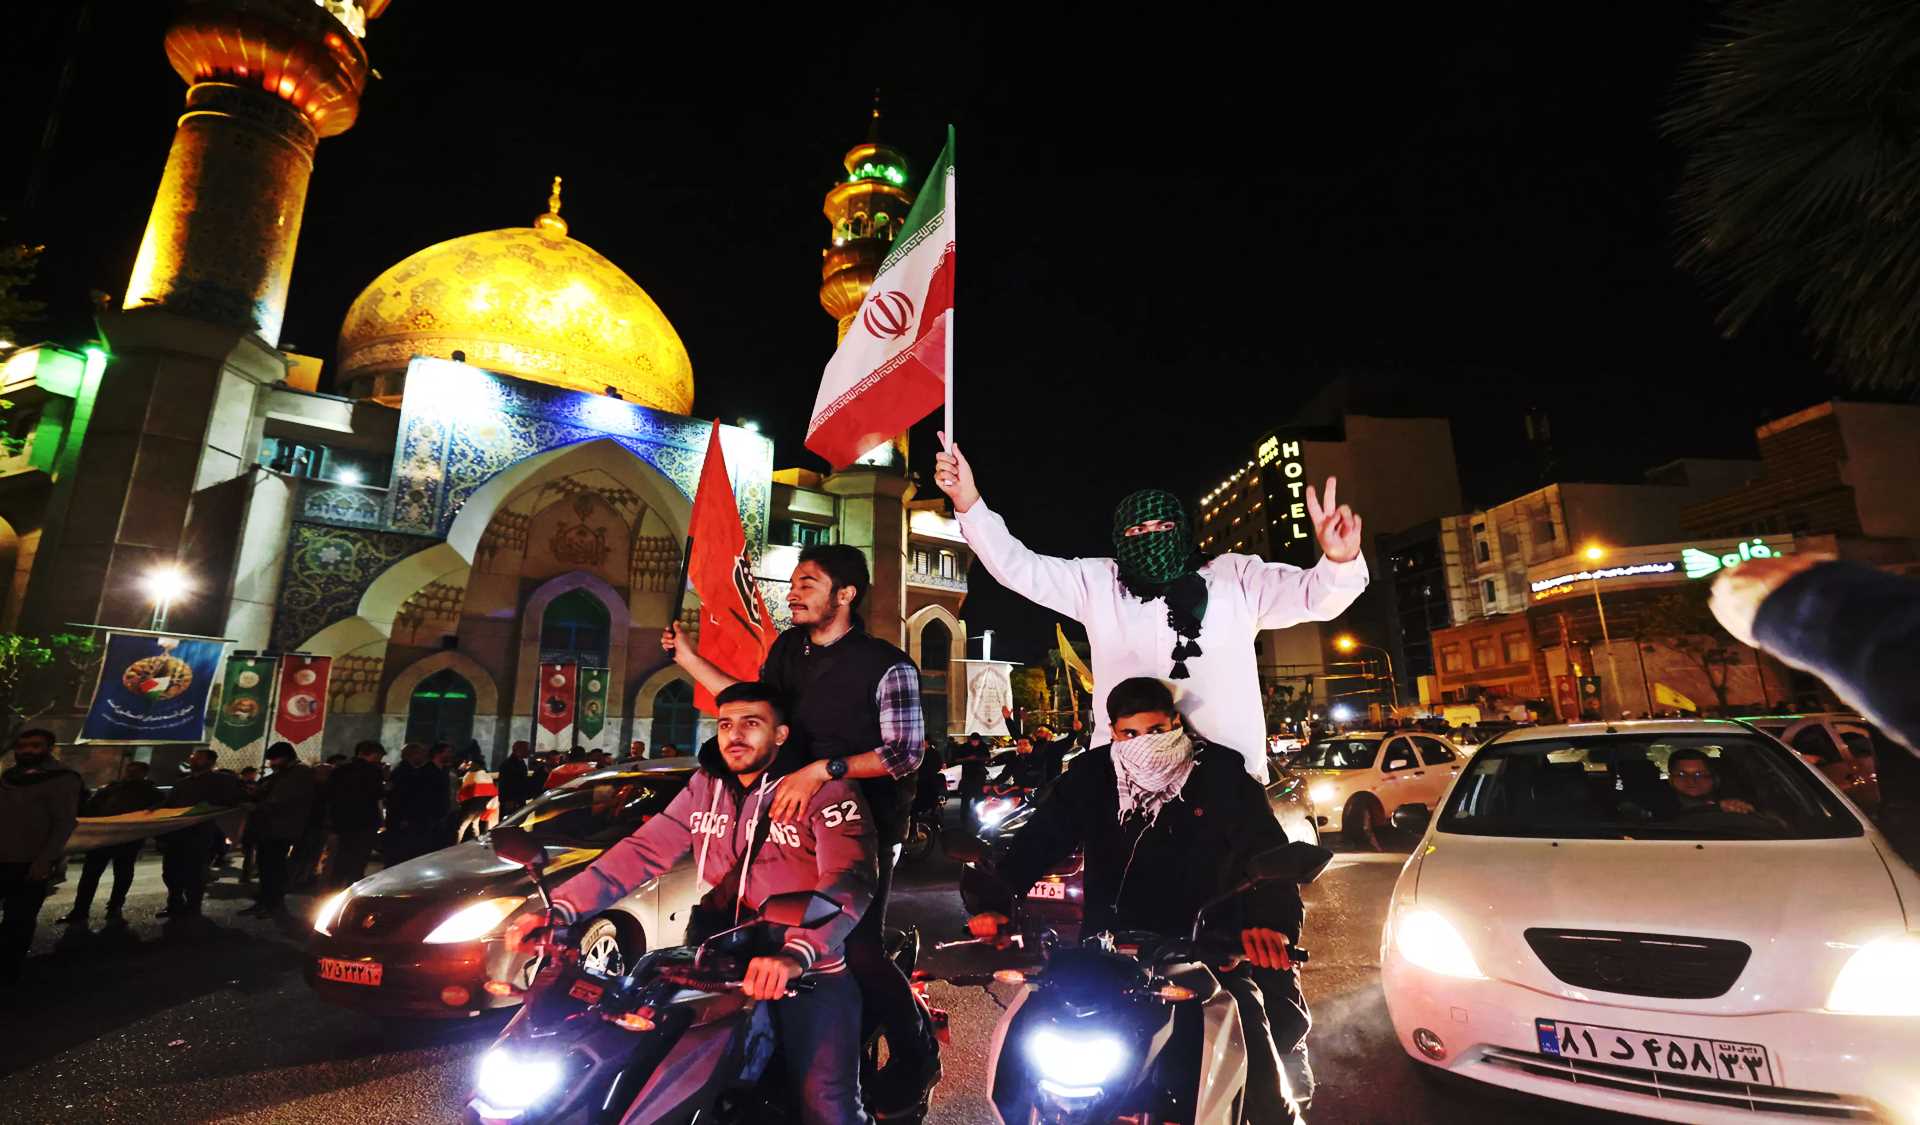 عن "المشروع الإقليمي" و"خفاياه": إيران بين روح الثورة وعقلانية السياسة.